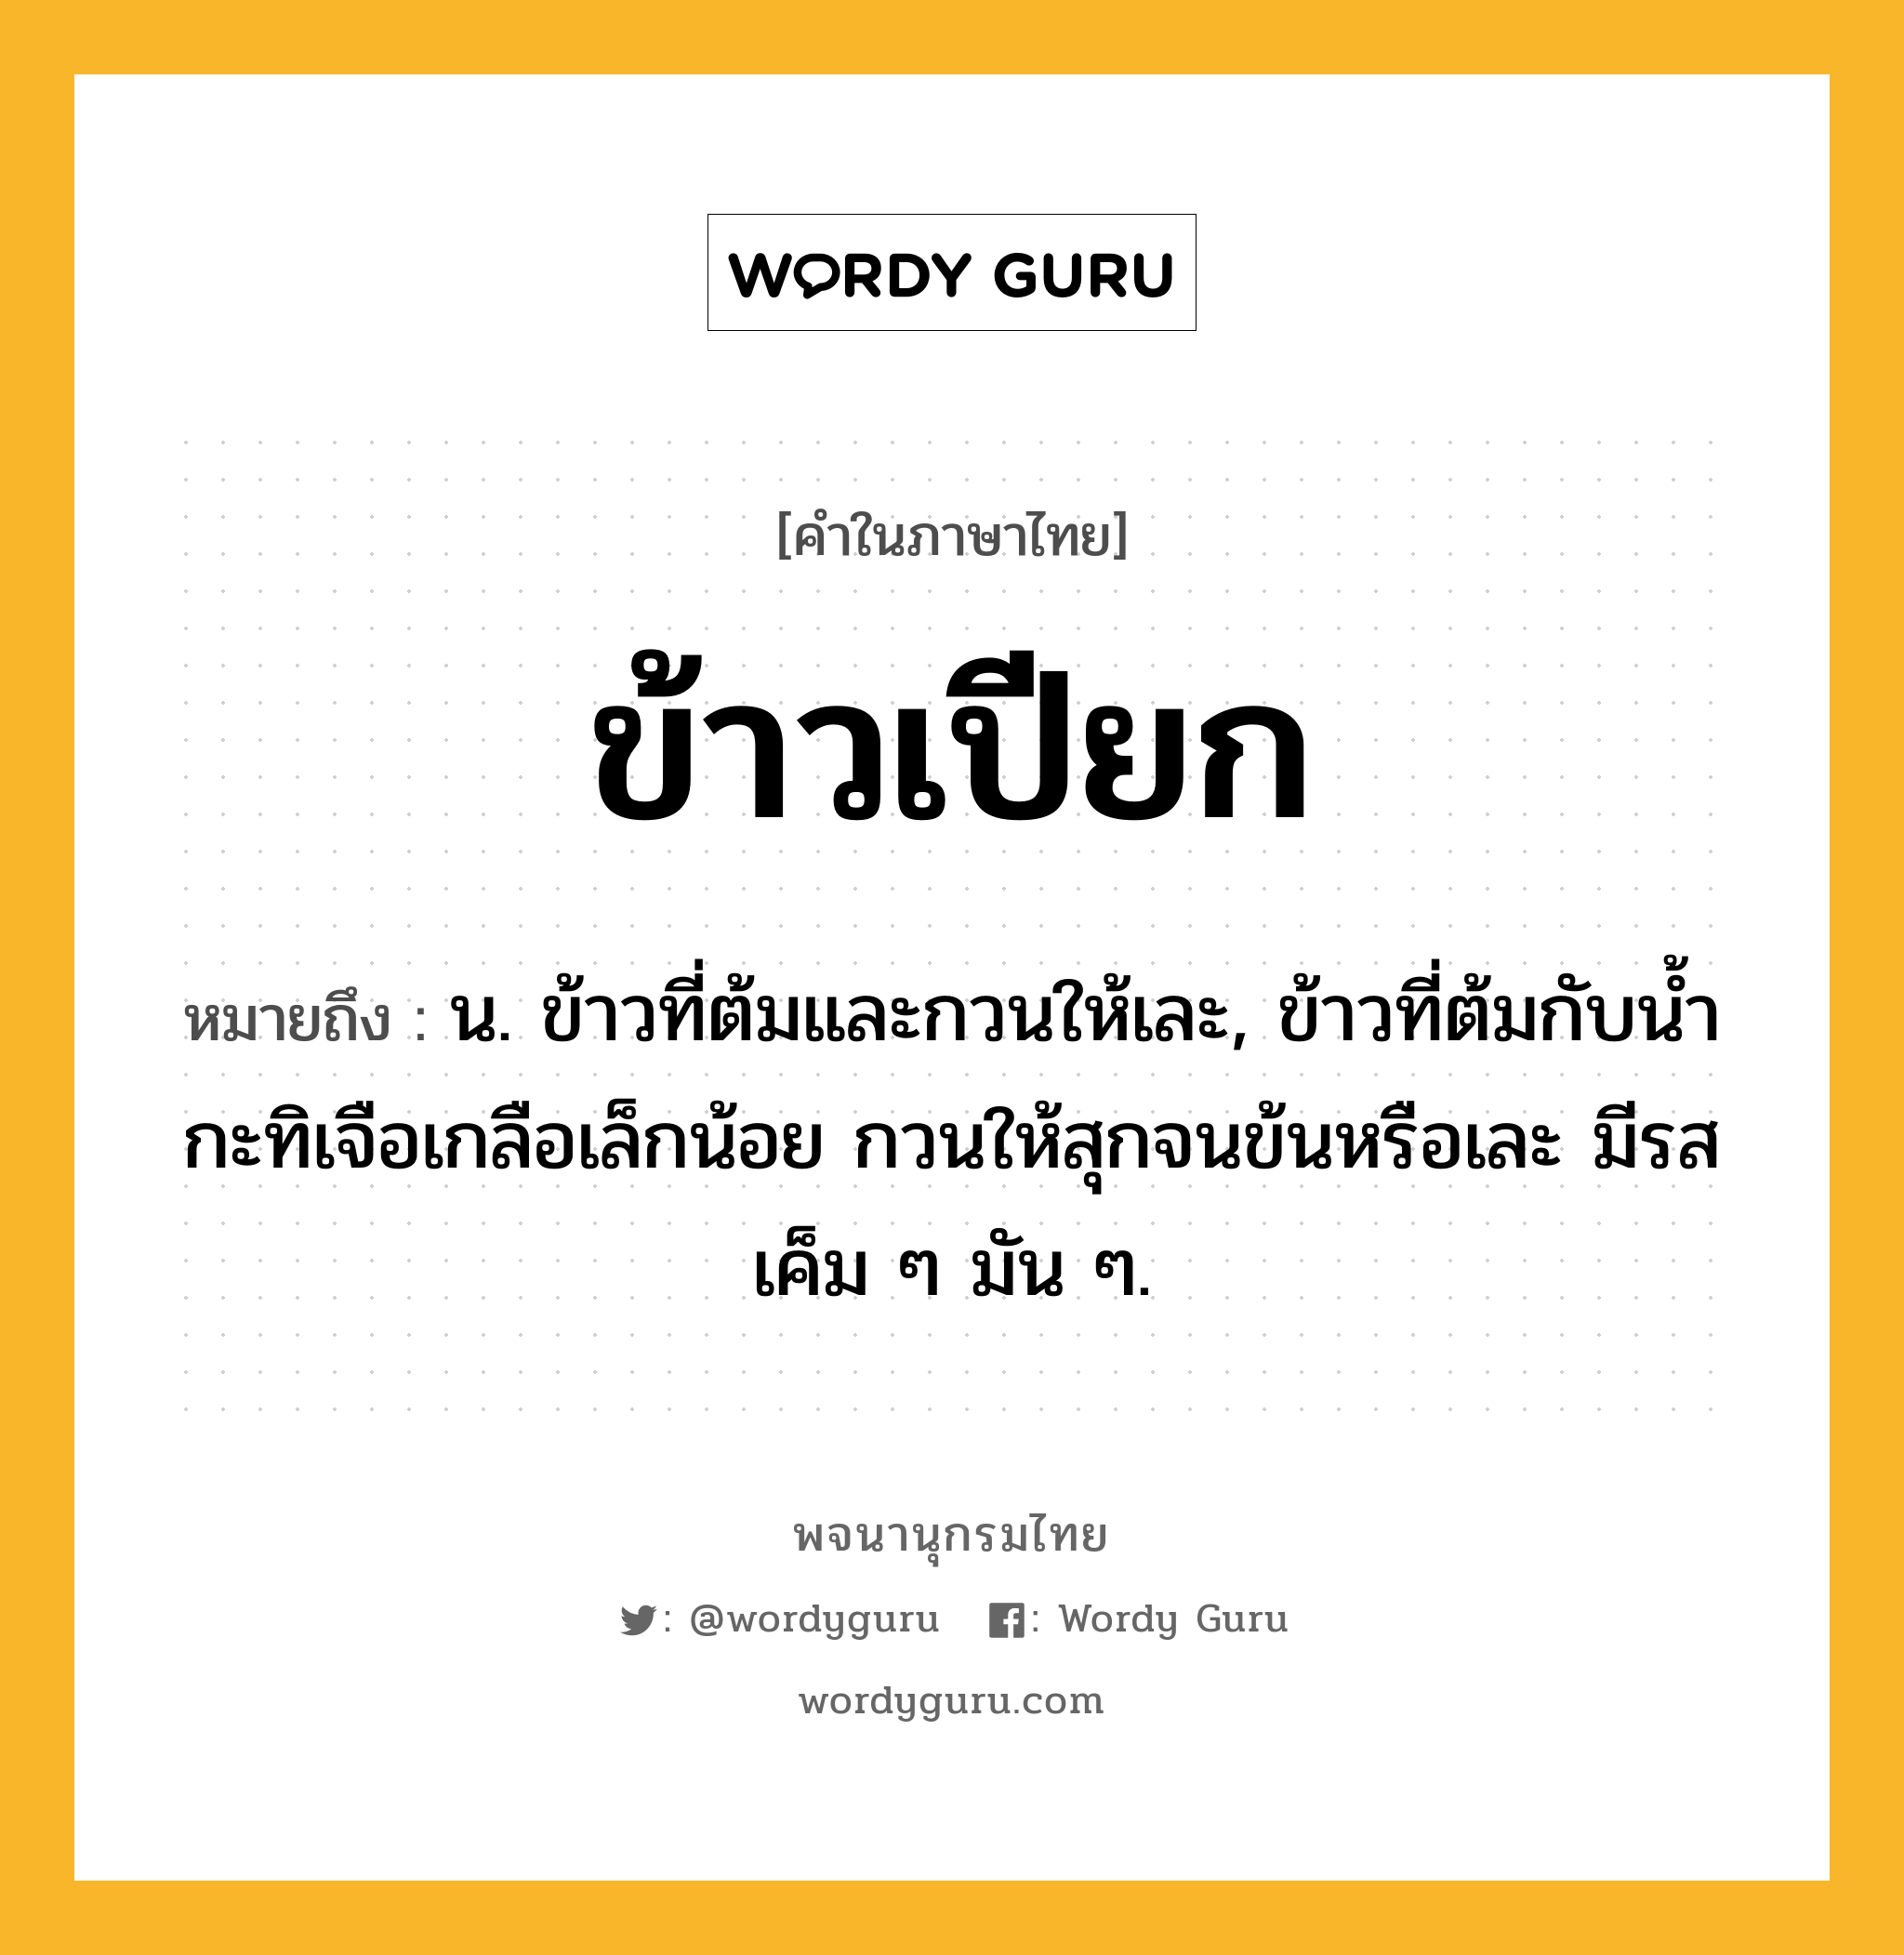 ข้าวเปียก หมายถึงอะไร?, คำในภาษาไทย ข้าวเปียก หมายถึง น. ข้าวที่ต้มและกวนให้เละ, ข้าวที่ต้มกับนํ้ากะทิเจือเกลือเล็กน้อย กวนให้สุกจนข้นหรือเละ มีรสเค็ม ๆ มัน ๆ.